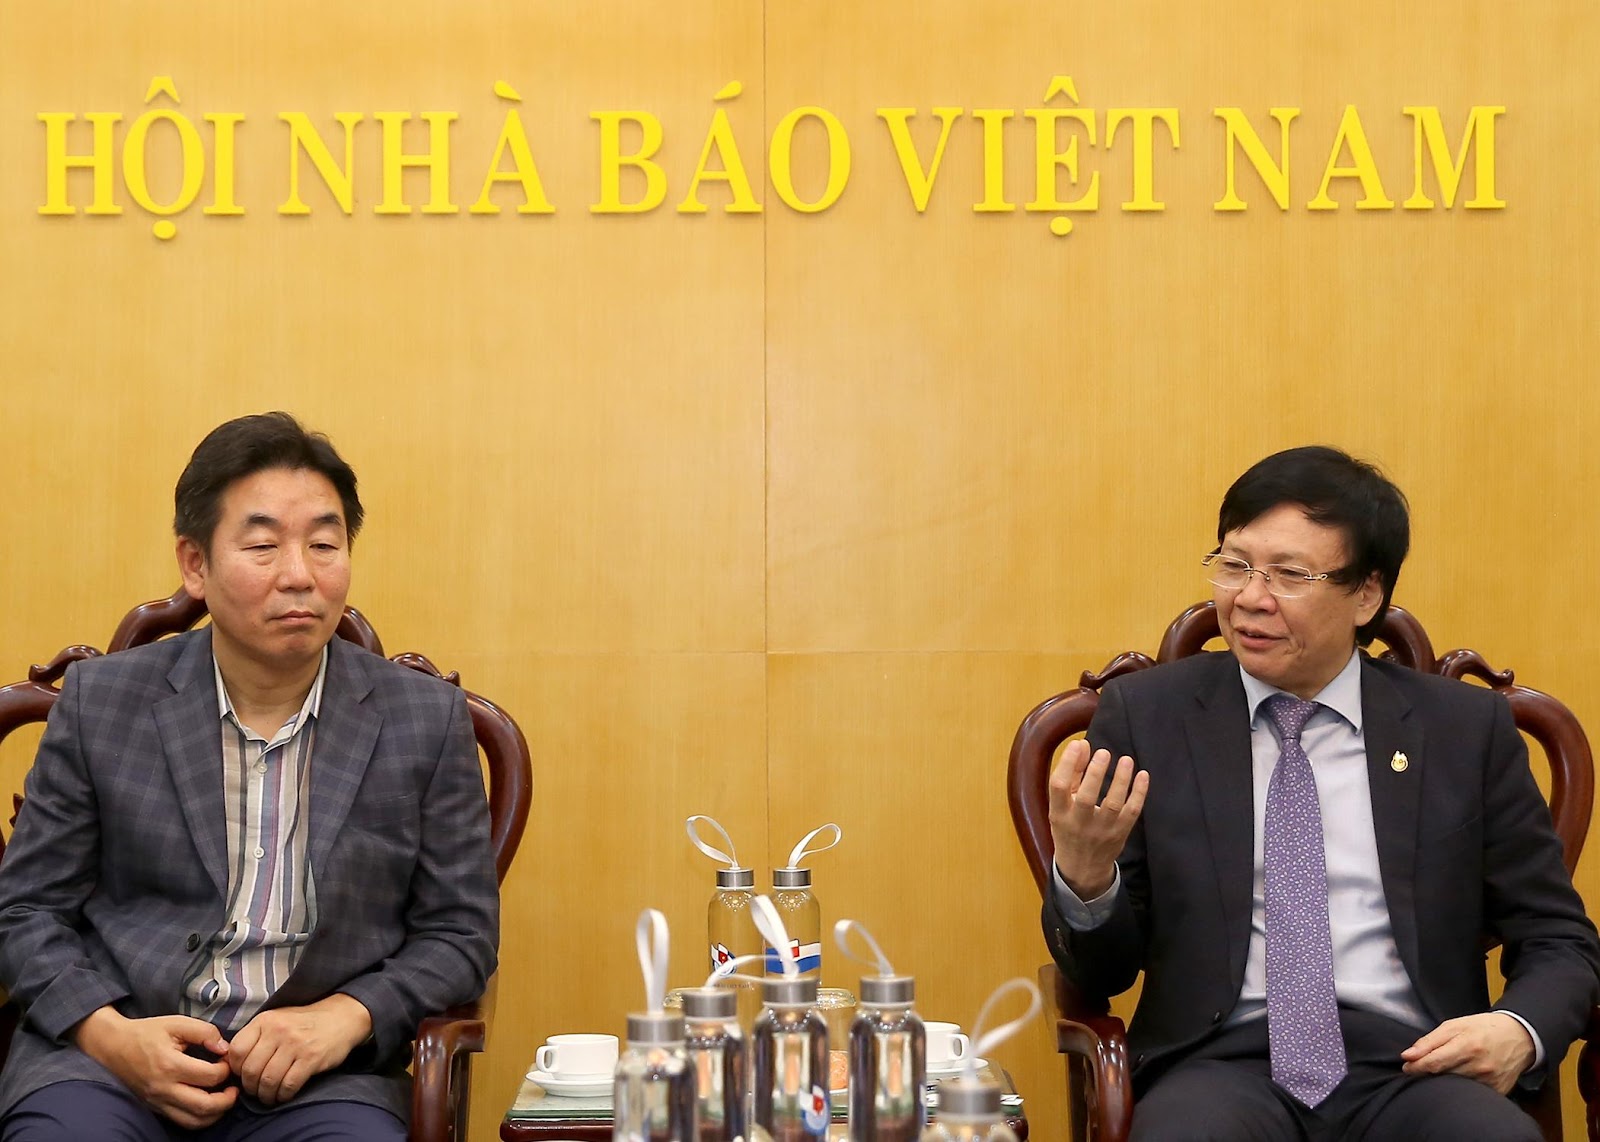 Đồng chí Hồ Quang Lợi, Phó Chủ tịch Thường Trực Hội Nhà báo Việt Nam phát biểu tại buổi tiếp. Ảnh: Sơn Hải